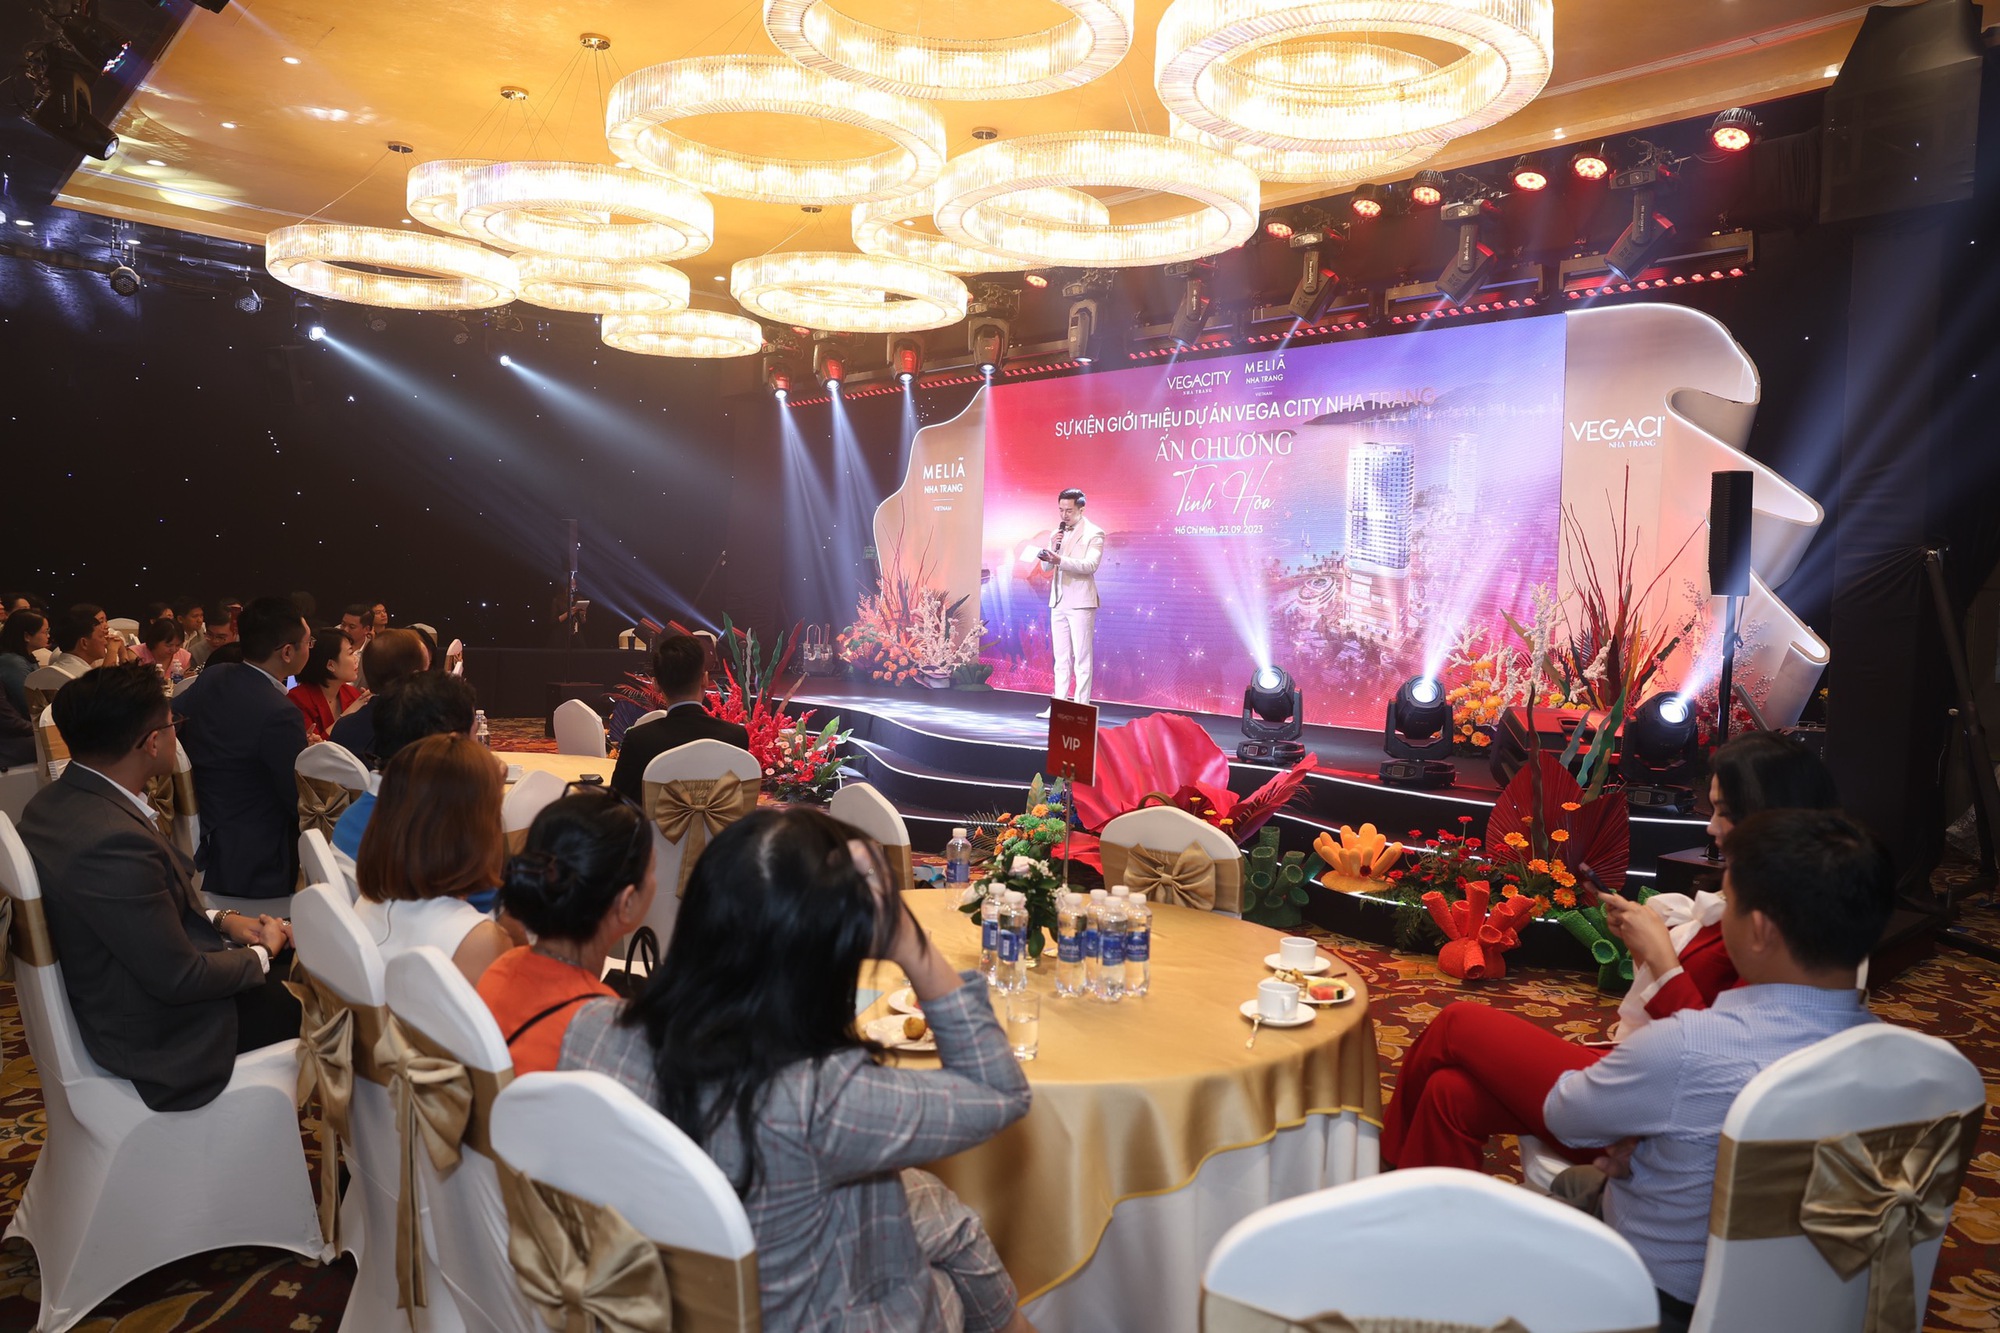 Nhà đầu tư hào hứng thưởng lãm tinh hoa từ VEGA City Nha Trang - Ảnh 5.